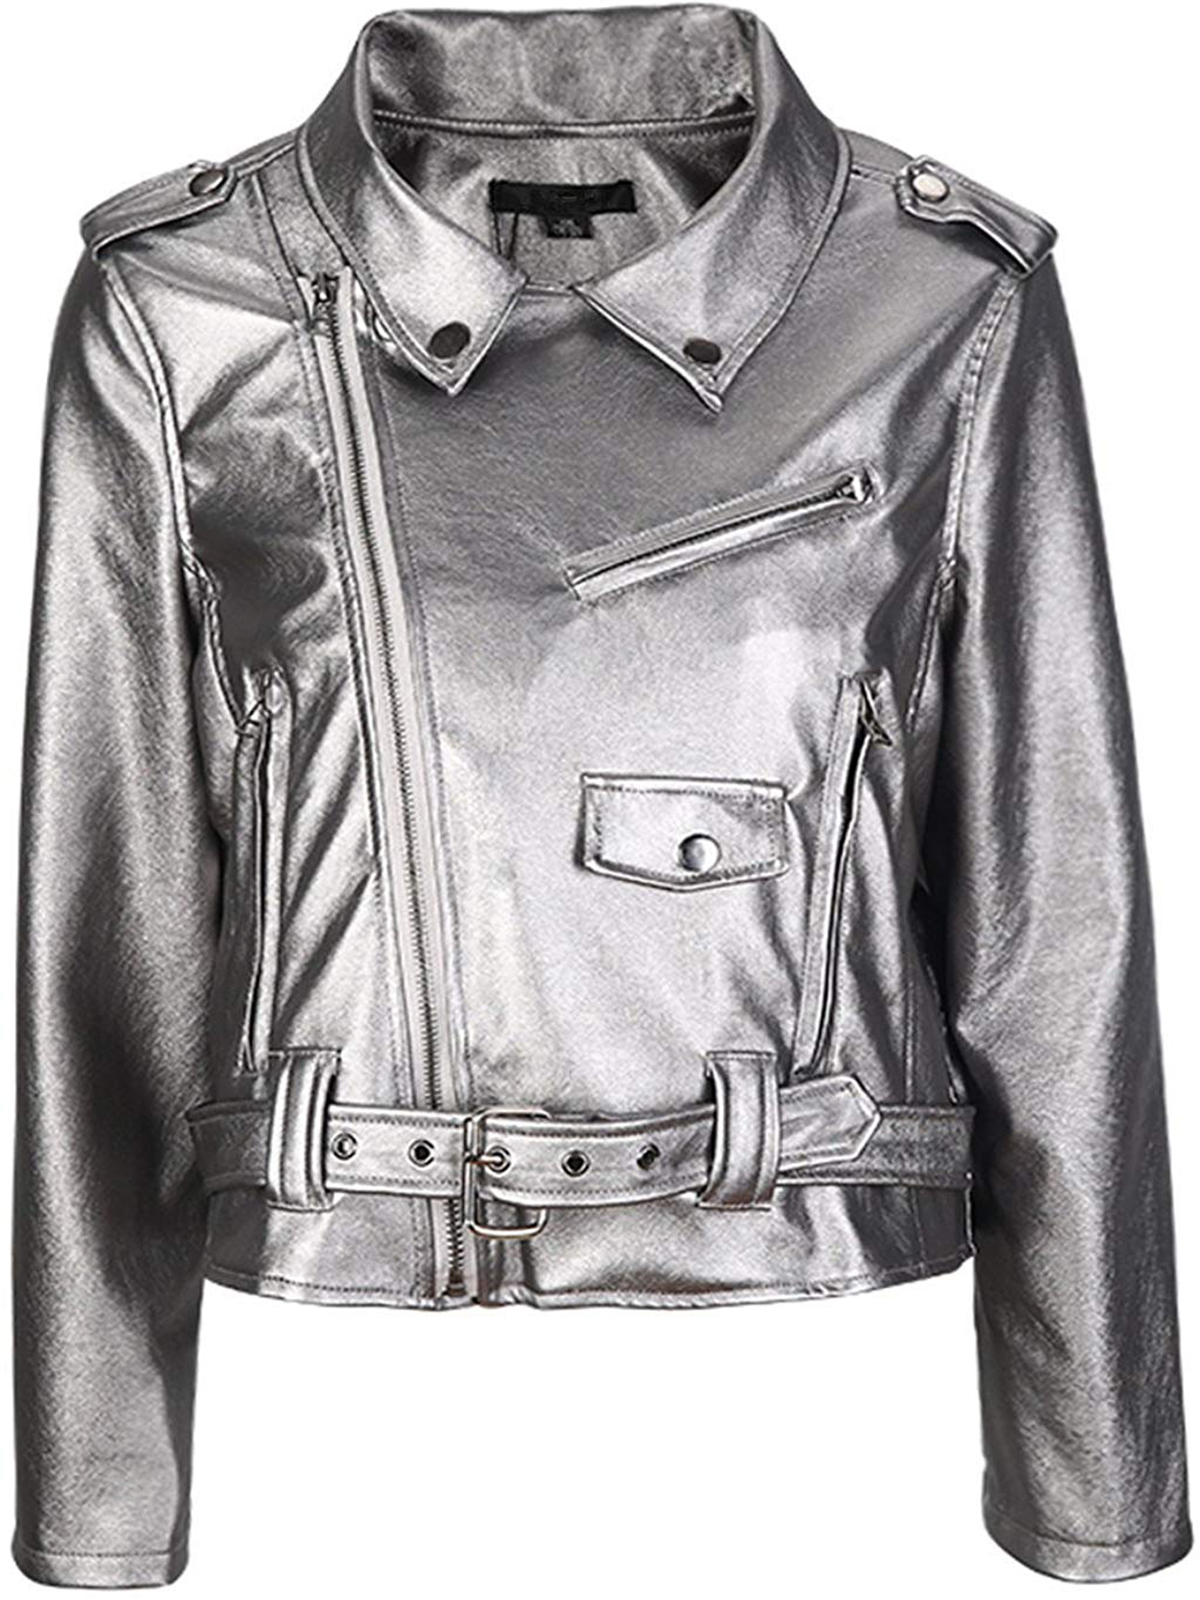 Metallic Leather Biker Jacket